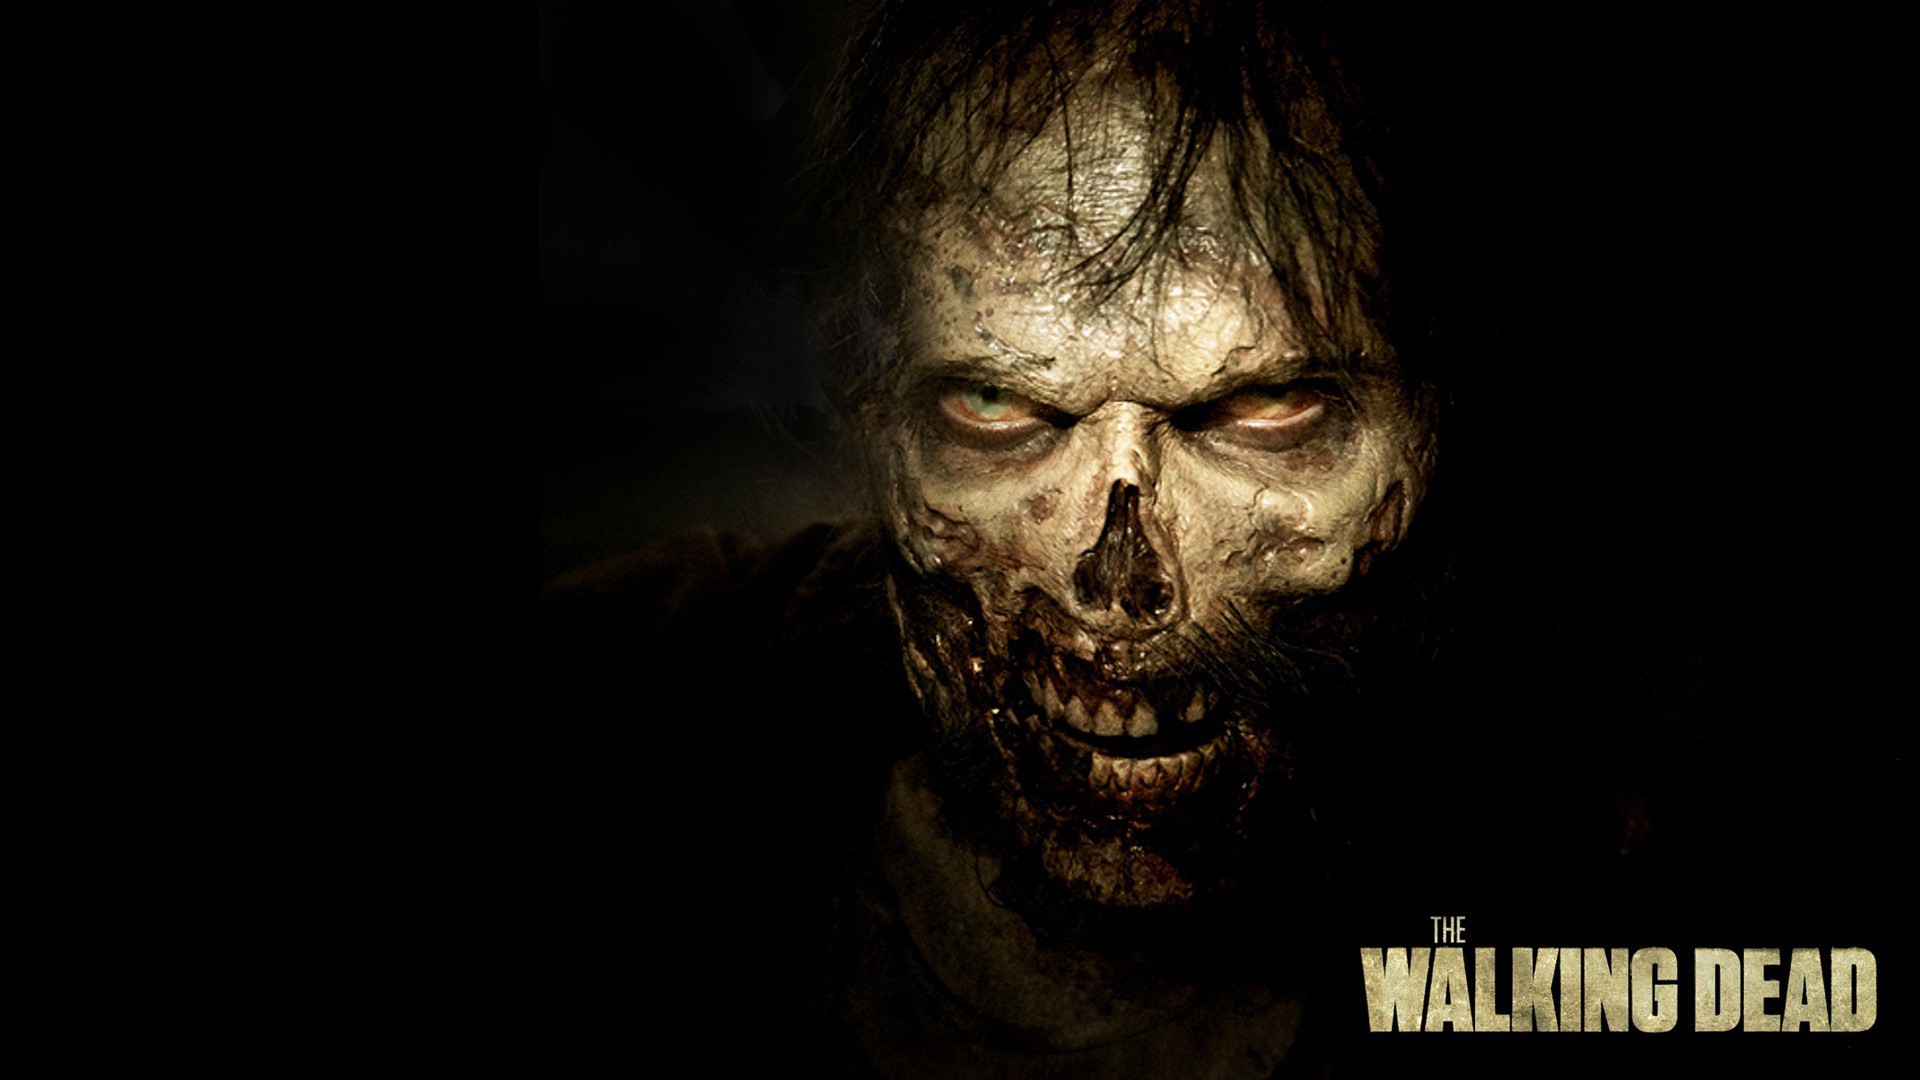 The Walking Dead Season Image HD New Wallpaper